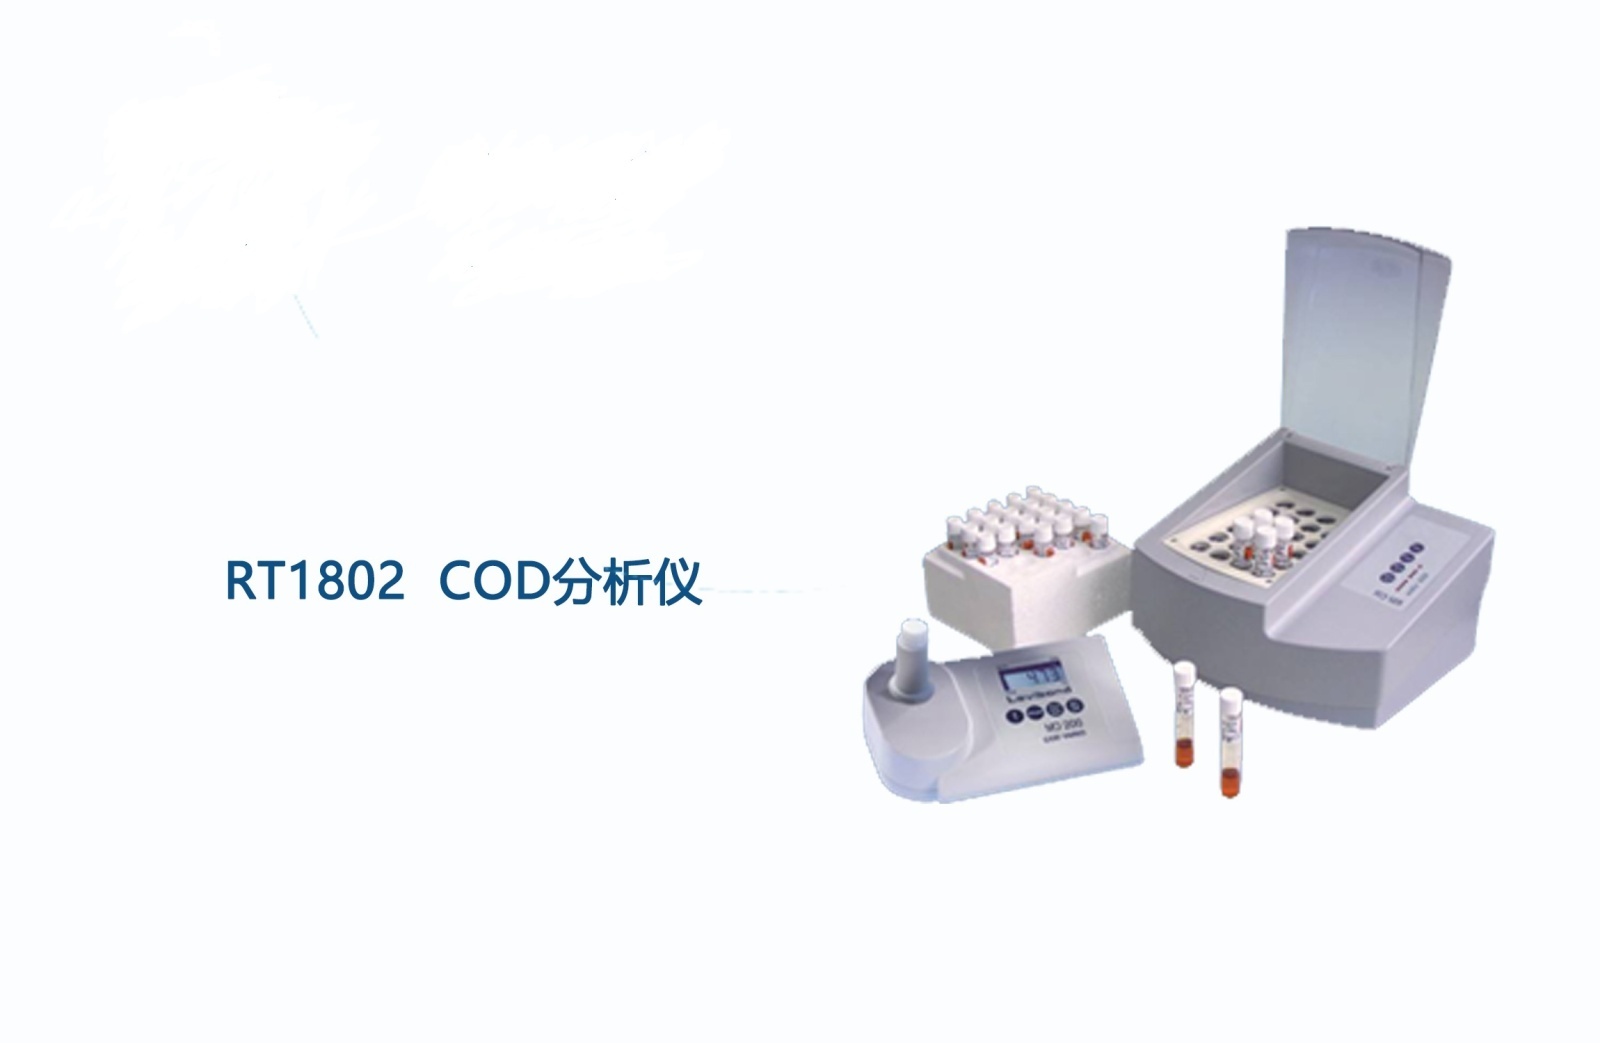 磐研COD分析仪RT1802的图片